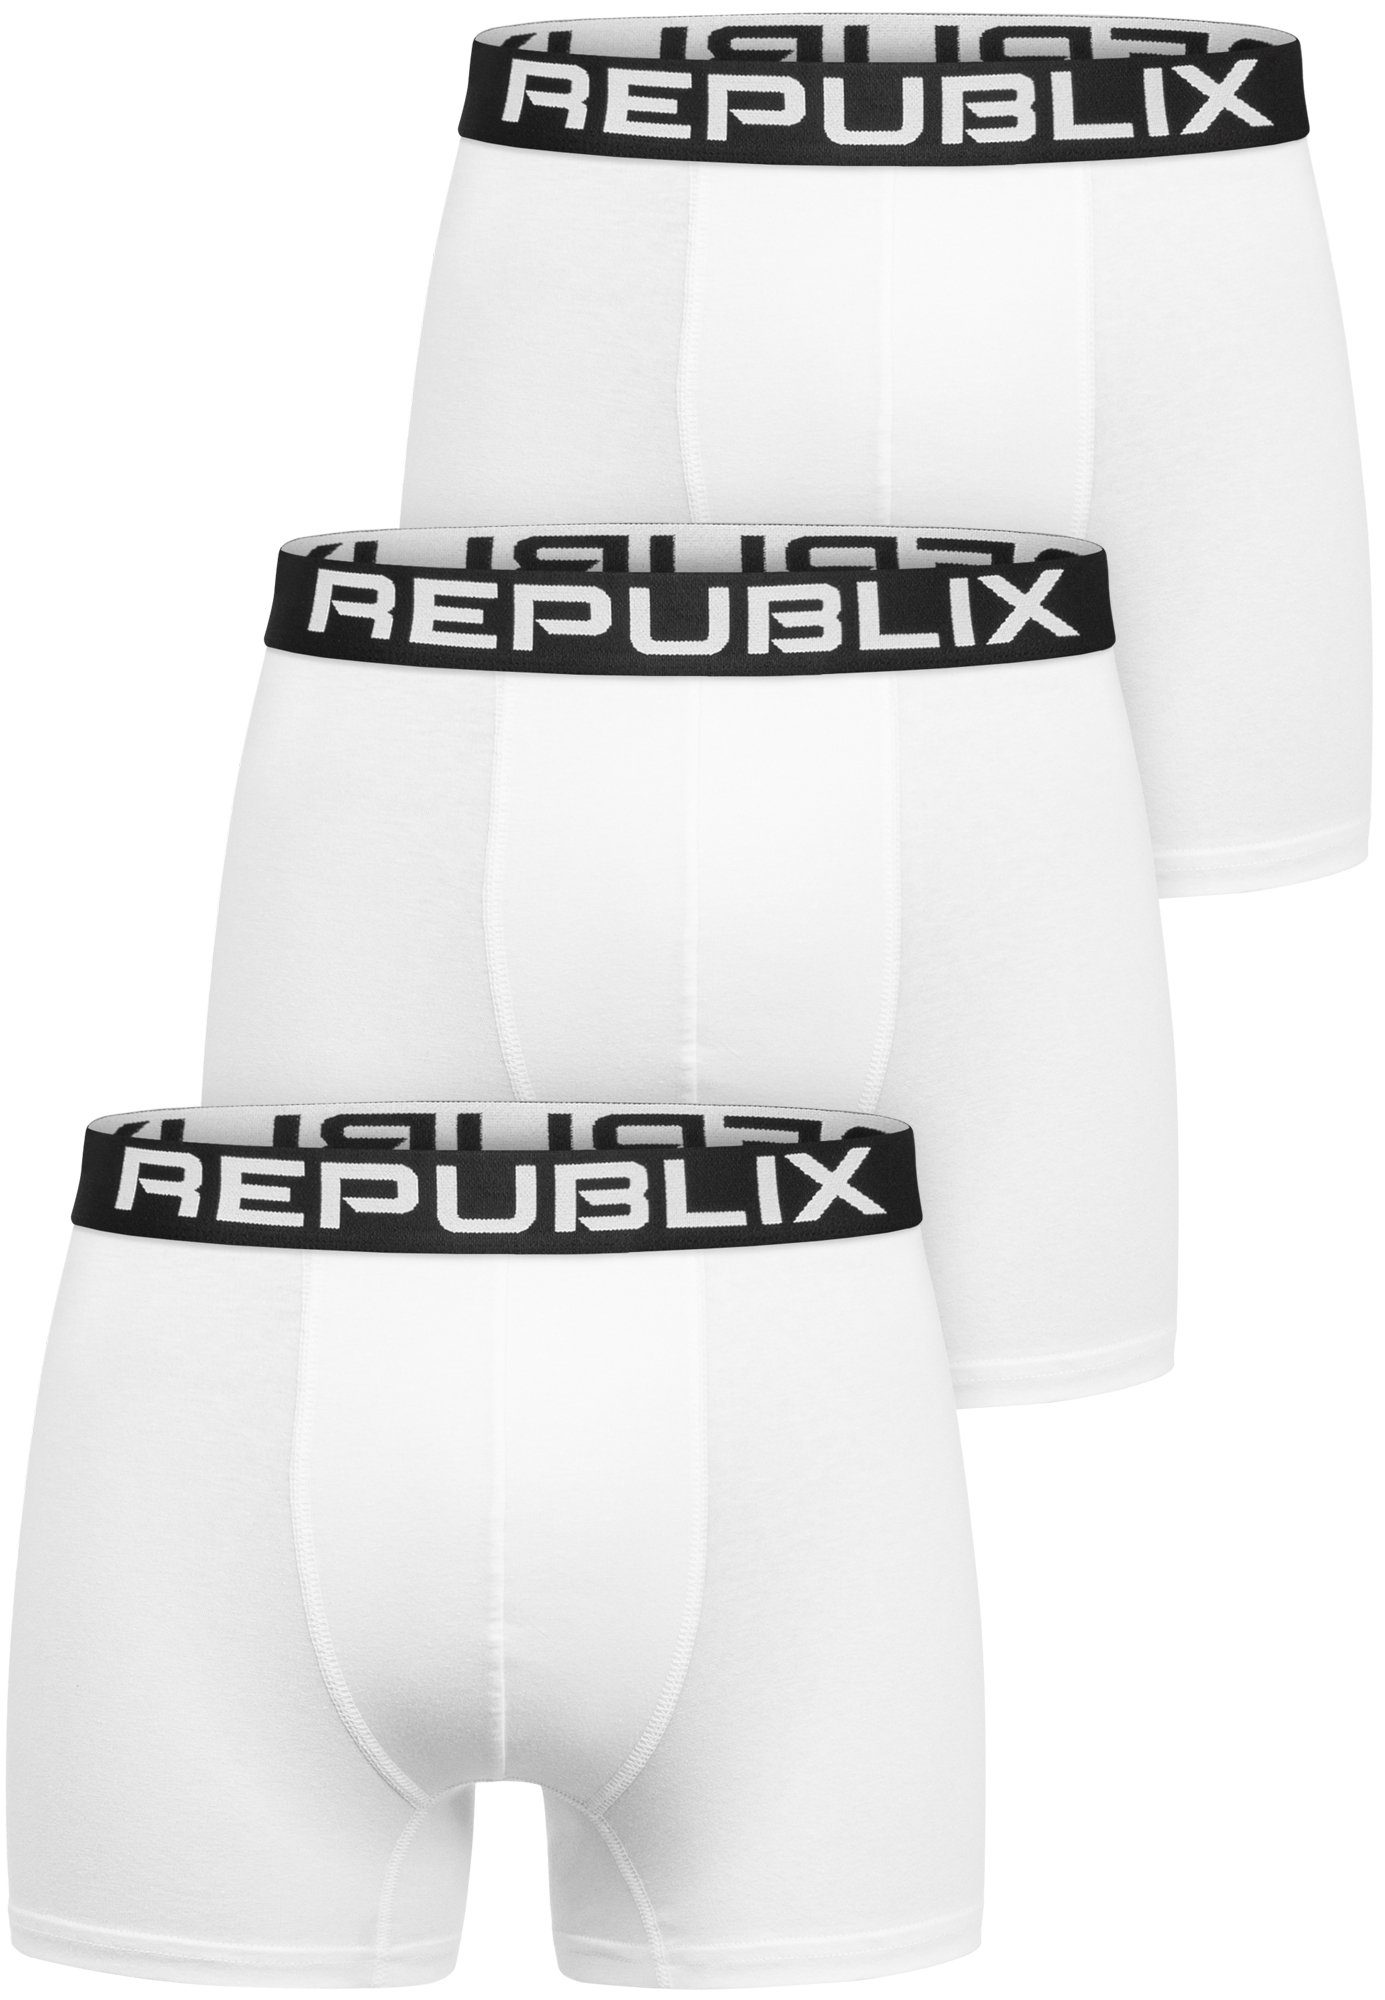 REPUBLIX Boxershorts DON (3er-Pack) Herren Baumwolle Männer Unterhose Unterwäsche